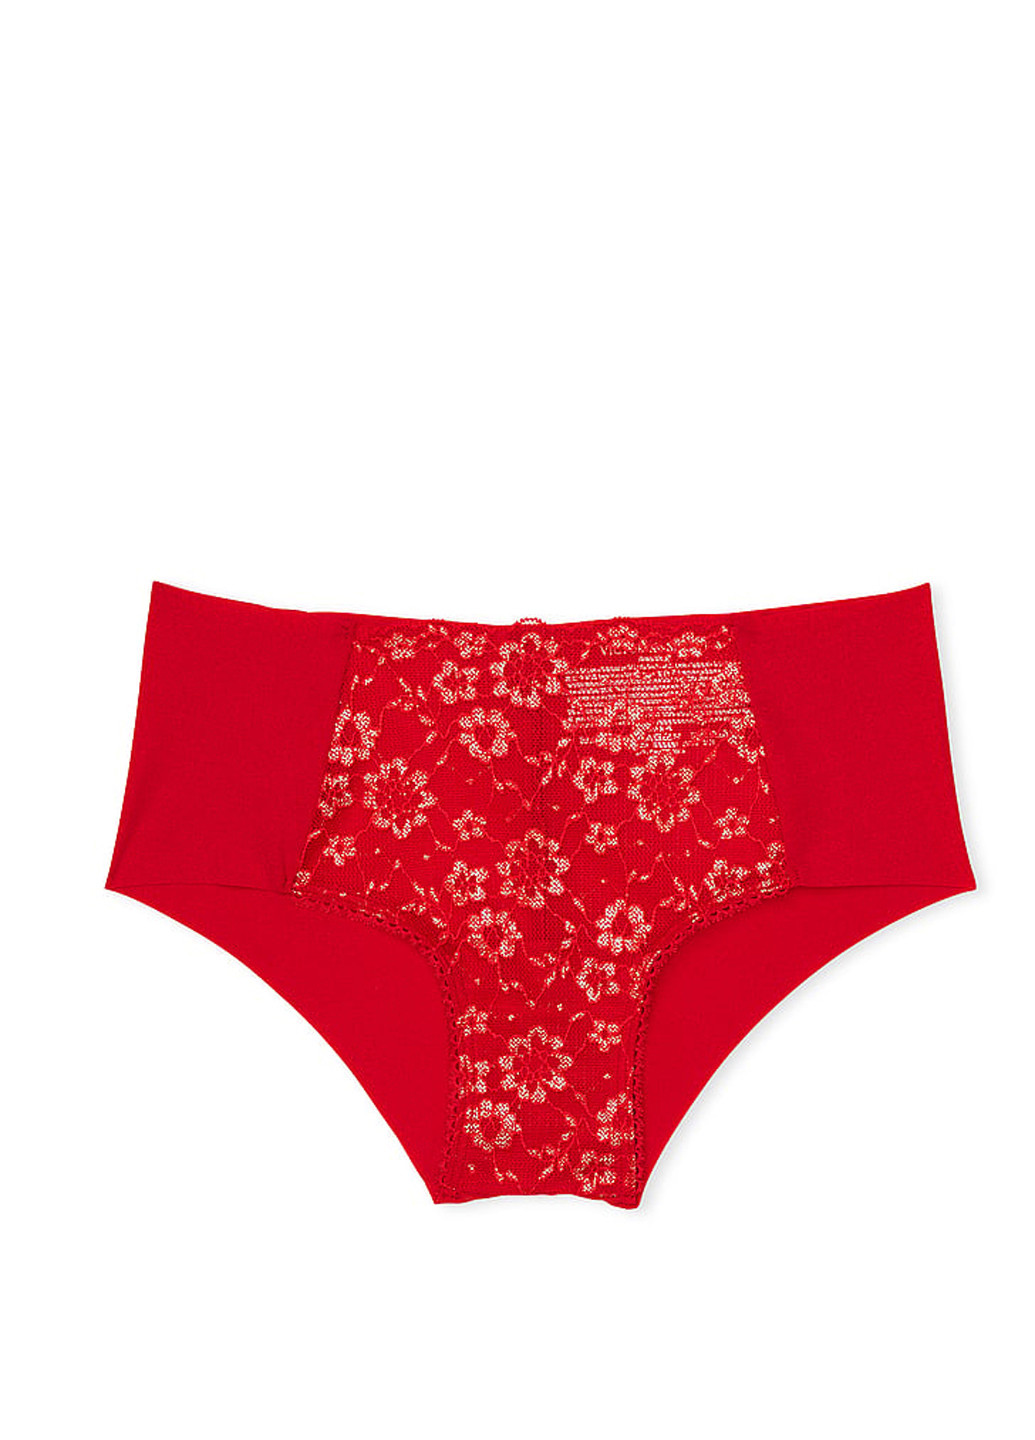 Красный демисезонный комплект белья (бюстгальтер, трусики) Victoria's Secret